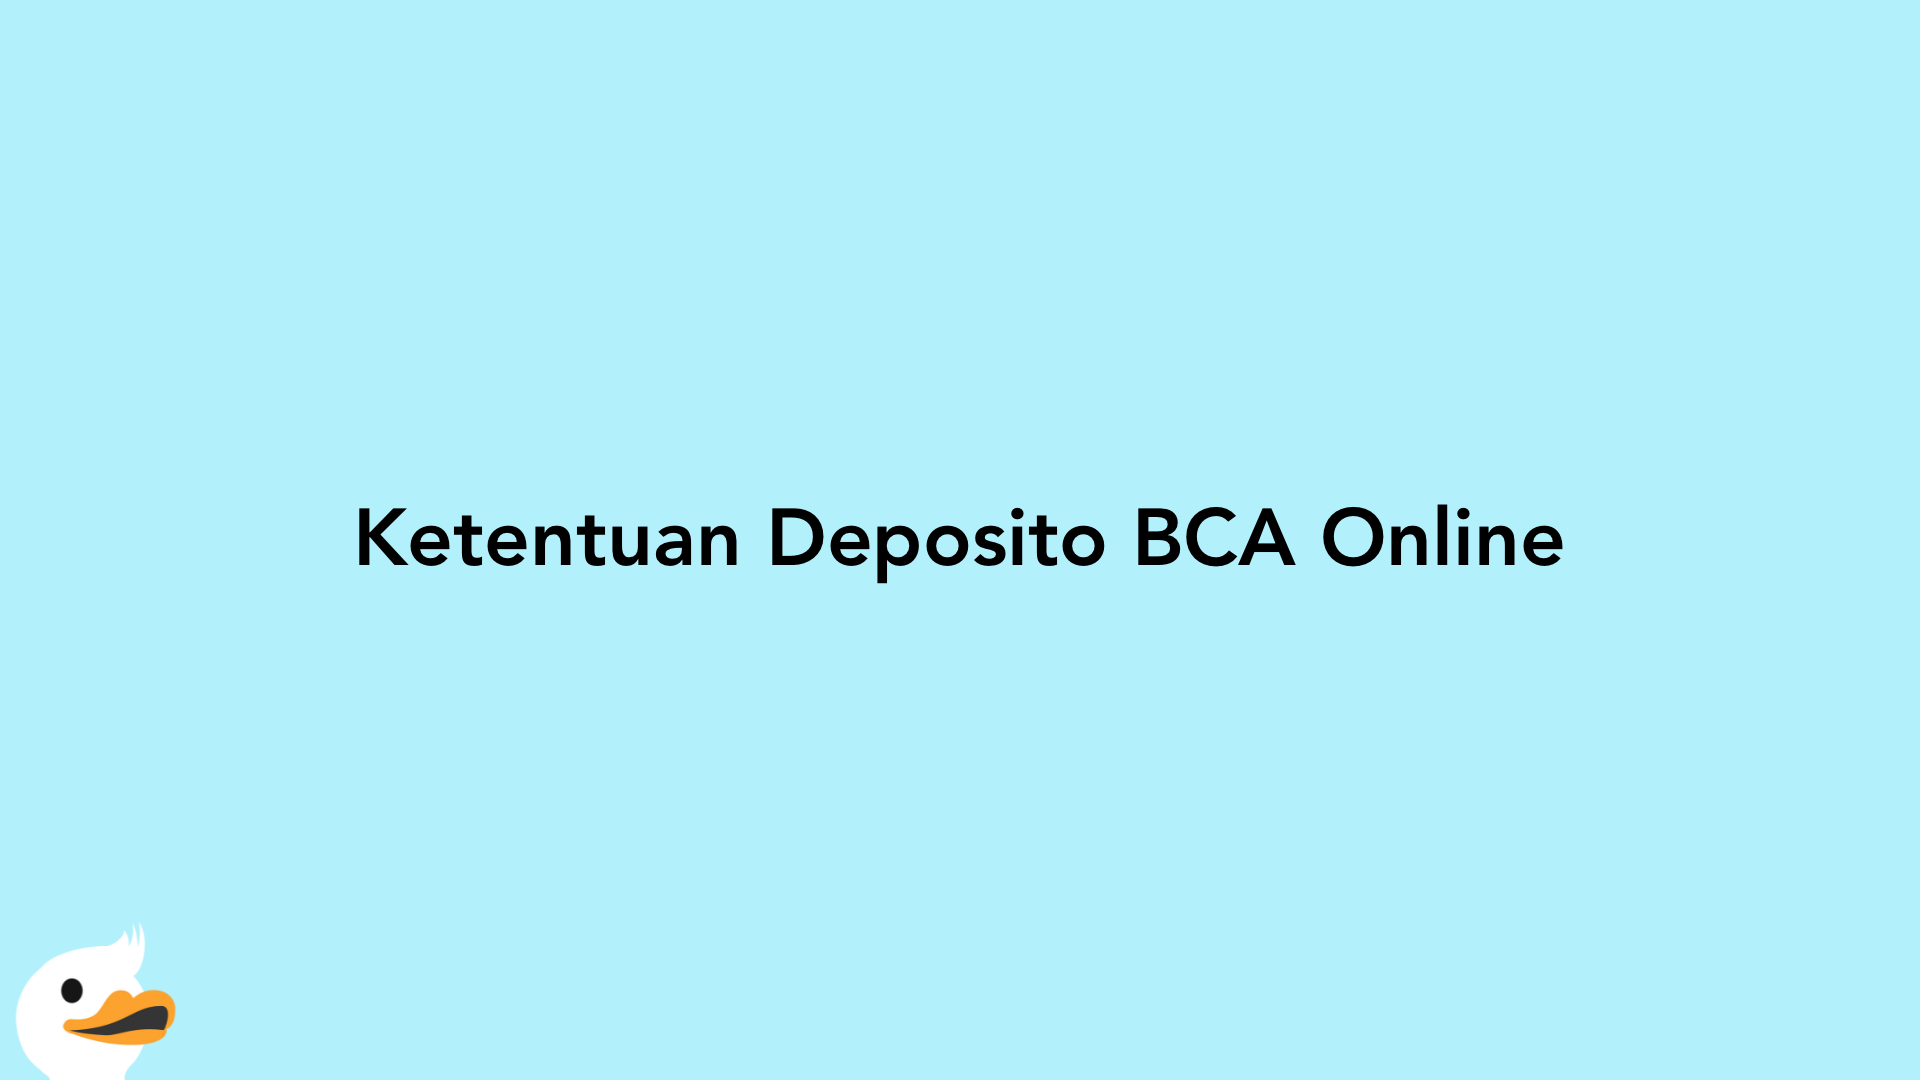 Ketentuan Deposito BCA Online